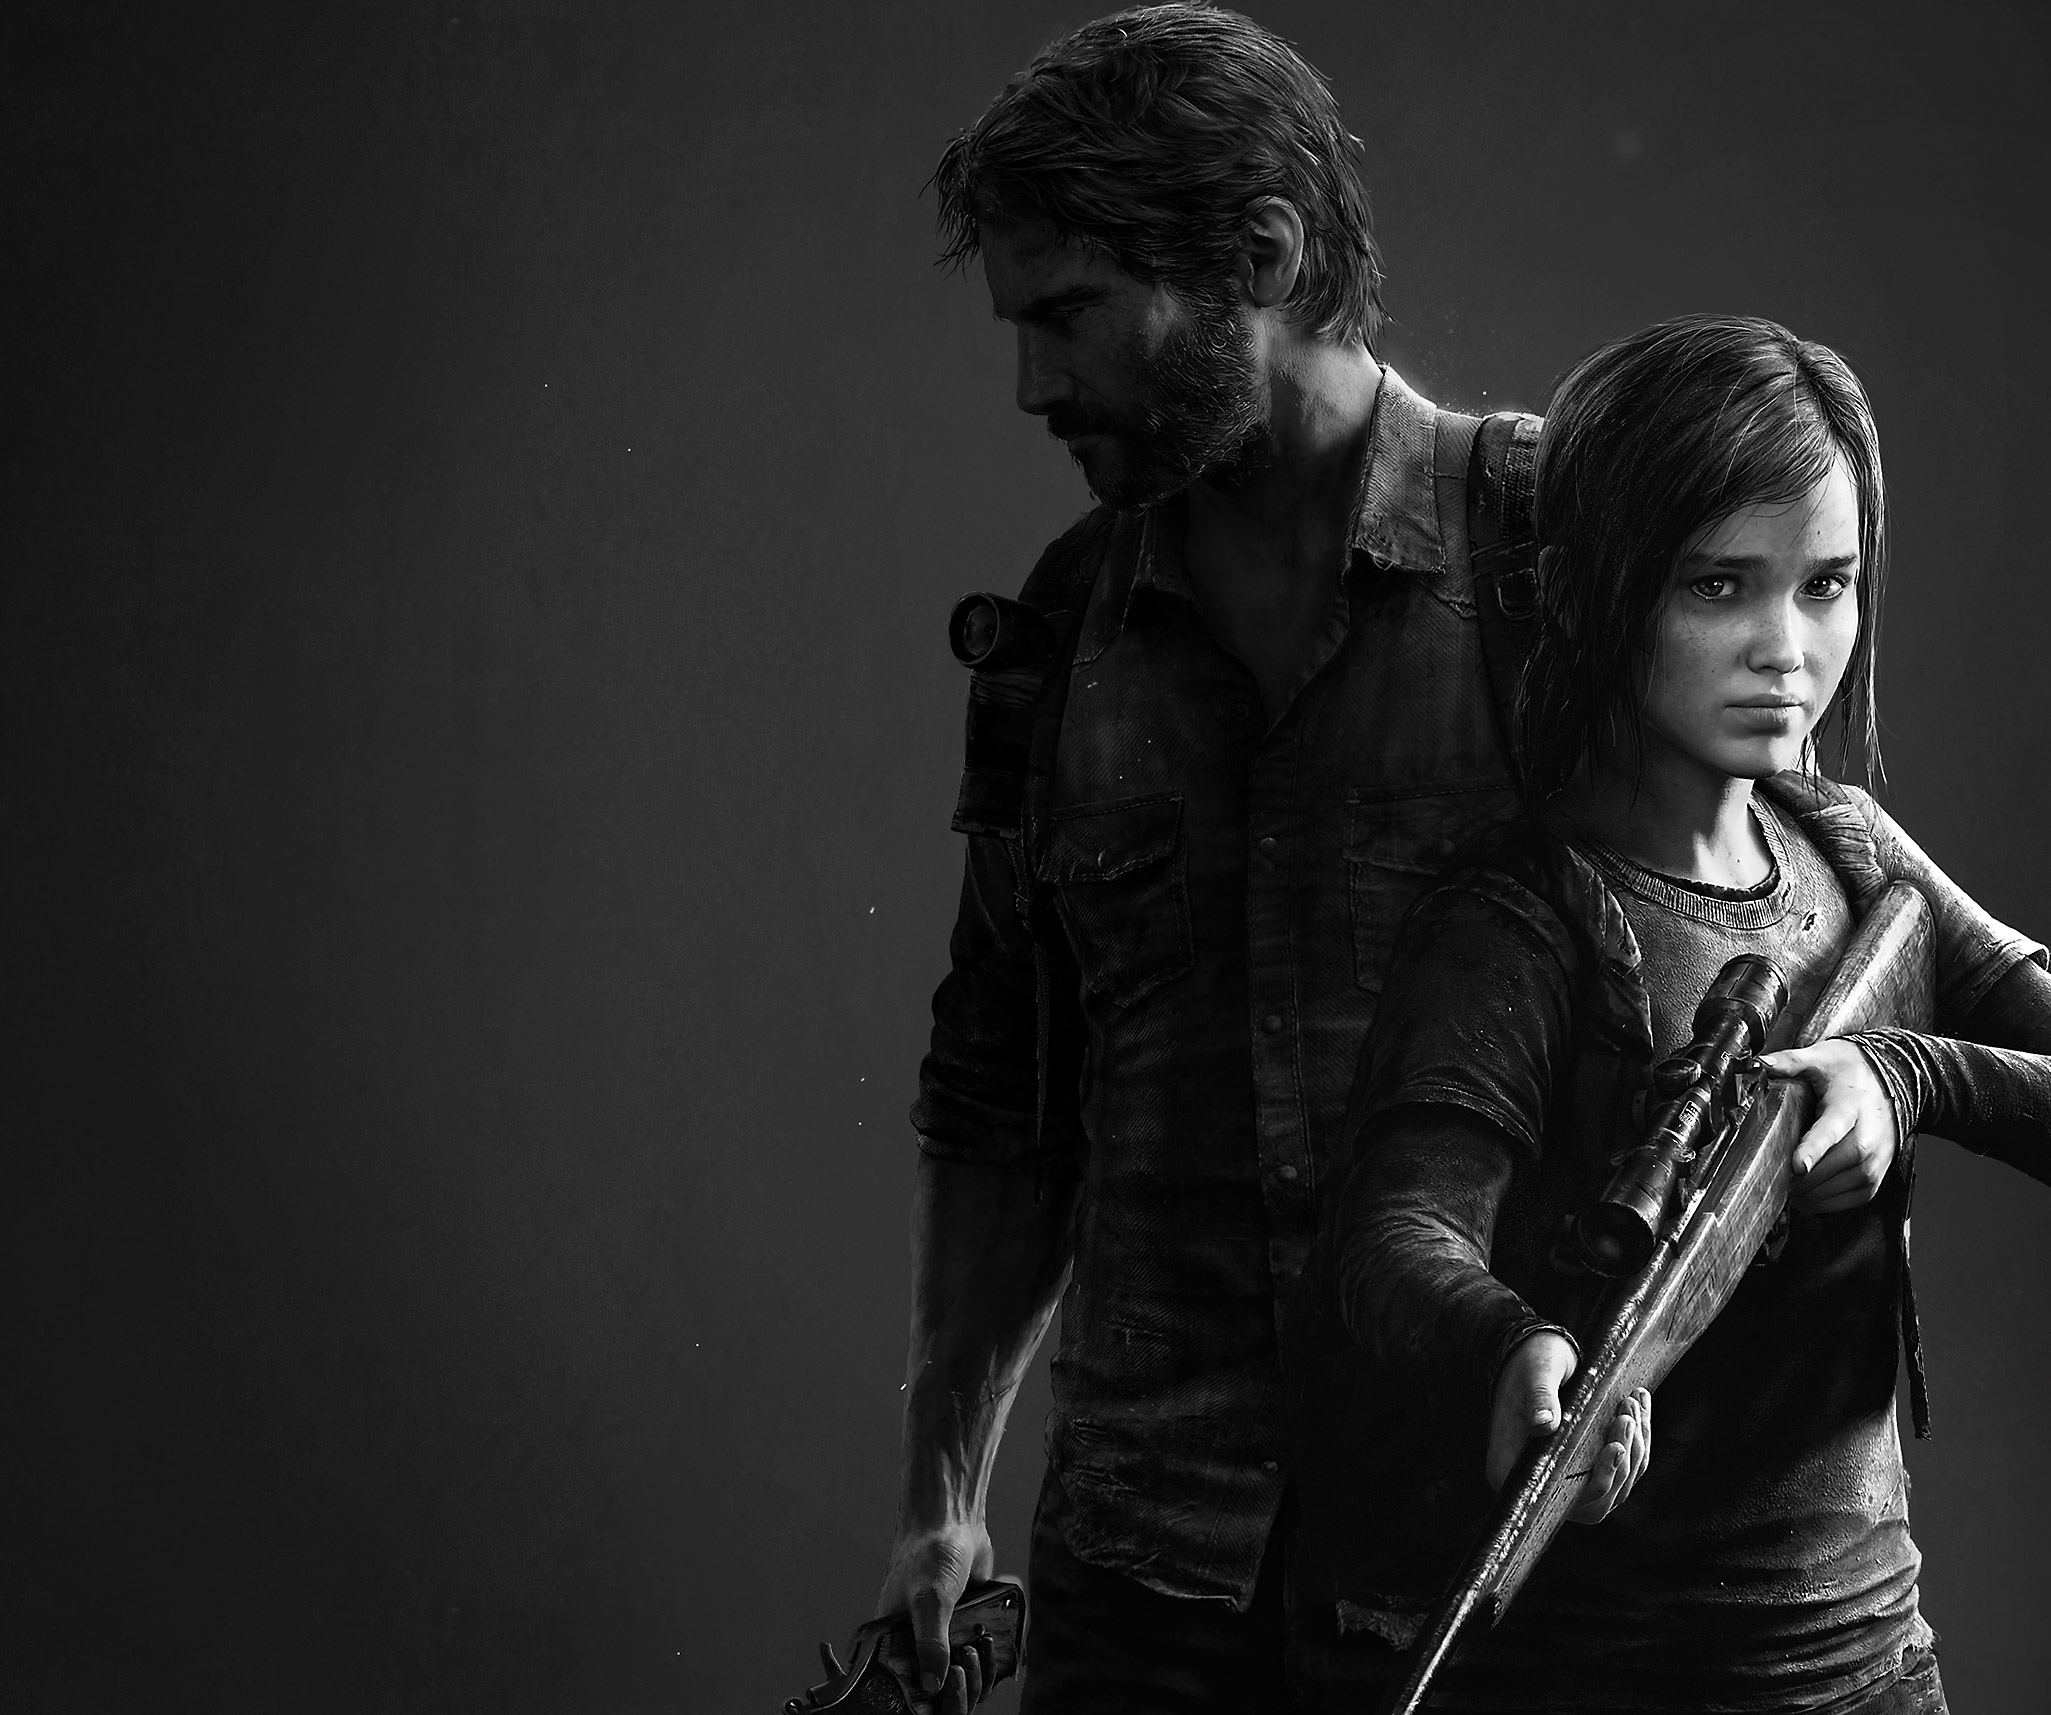 الصورة الفنية الأساسية للعبة The Last of Us Remastered تعرض صورة بالأبيض والأسود للشخصيتين الرئيستين Joel و Ellie.